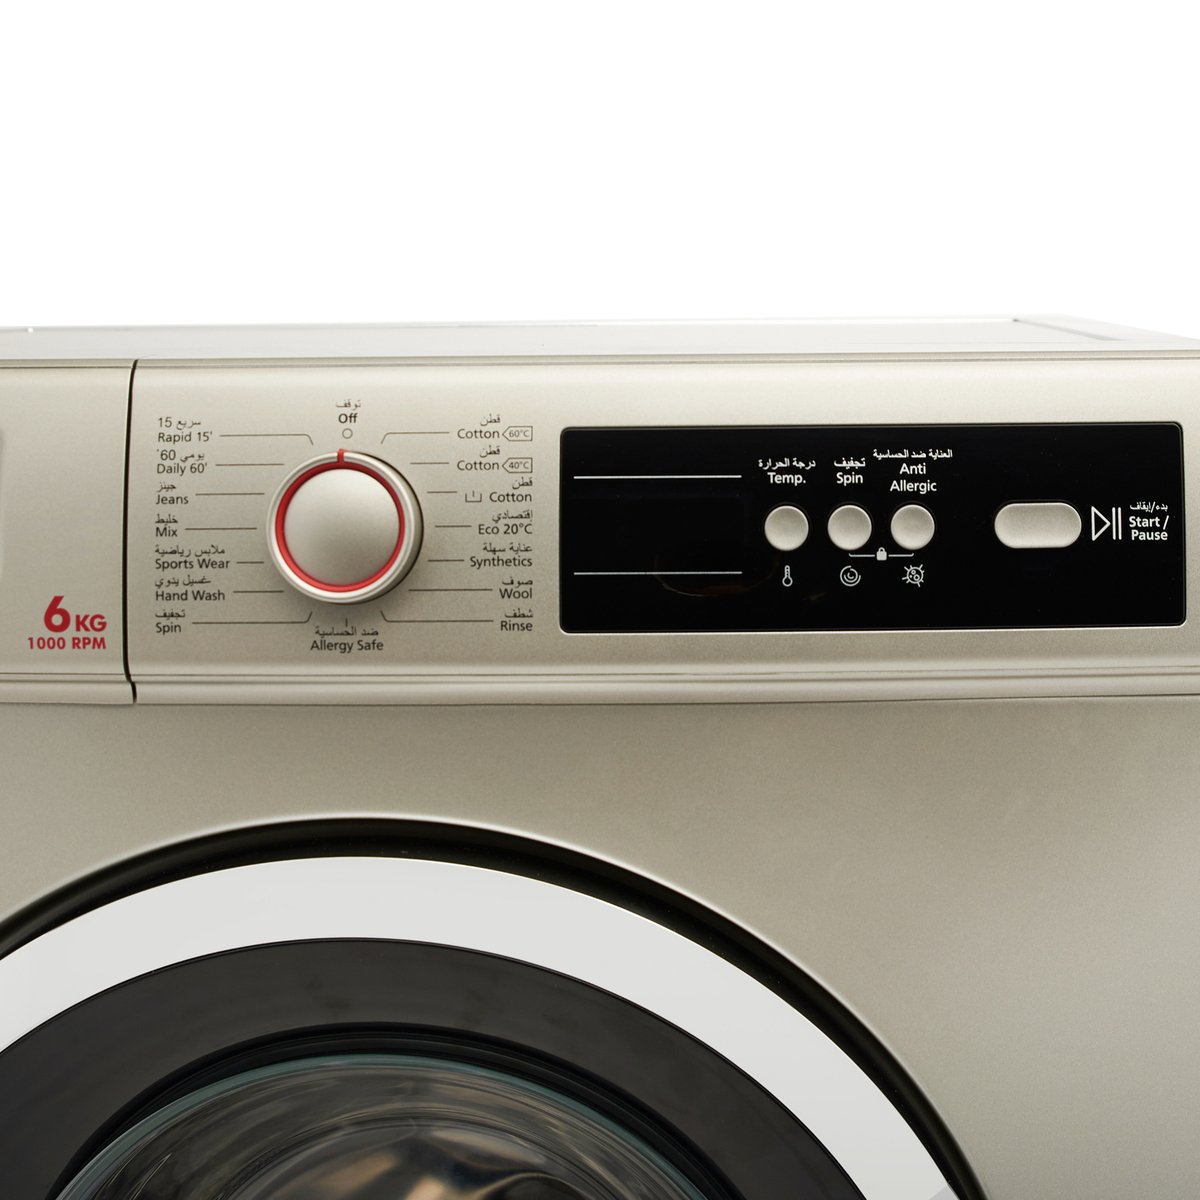 Hoover Front Load Washing Machine, 1000RPM,HWM-V610-S 6KG